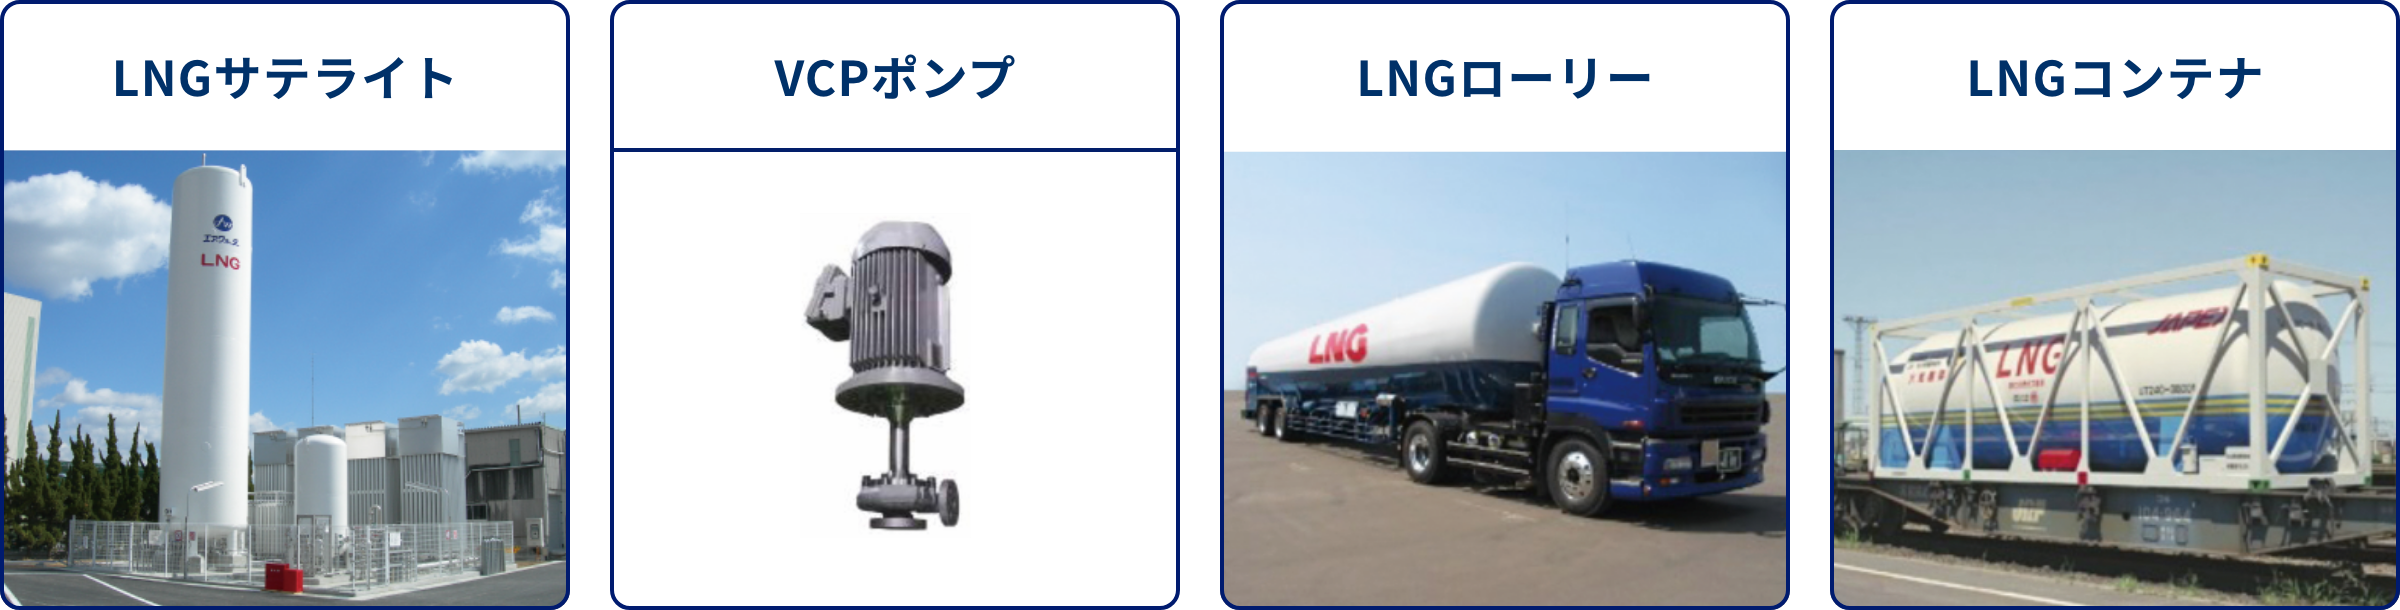 エア・ウォーターのLNG関連商品 LNGサテライト/VCPポンプ/LNGローリー/LNGコンテナ